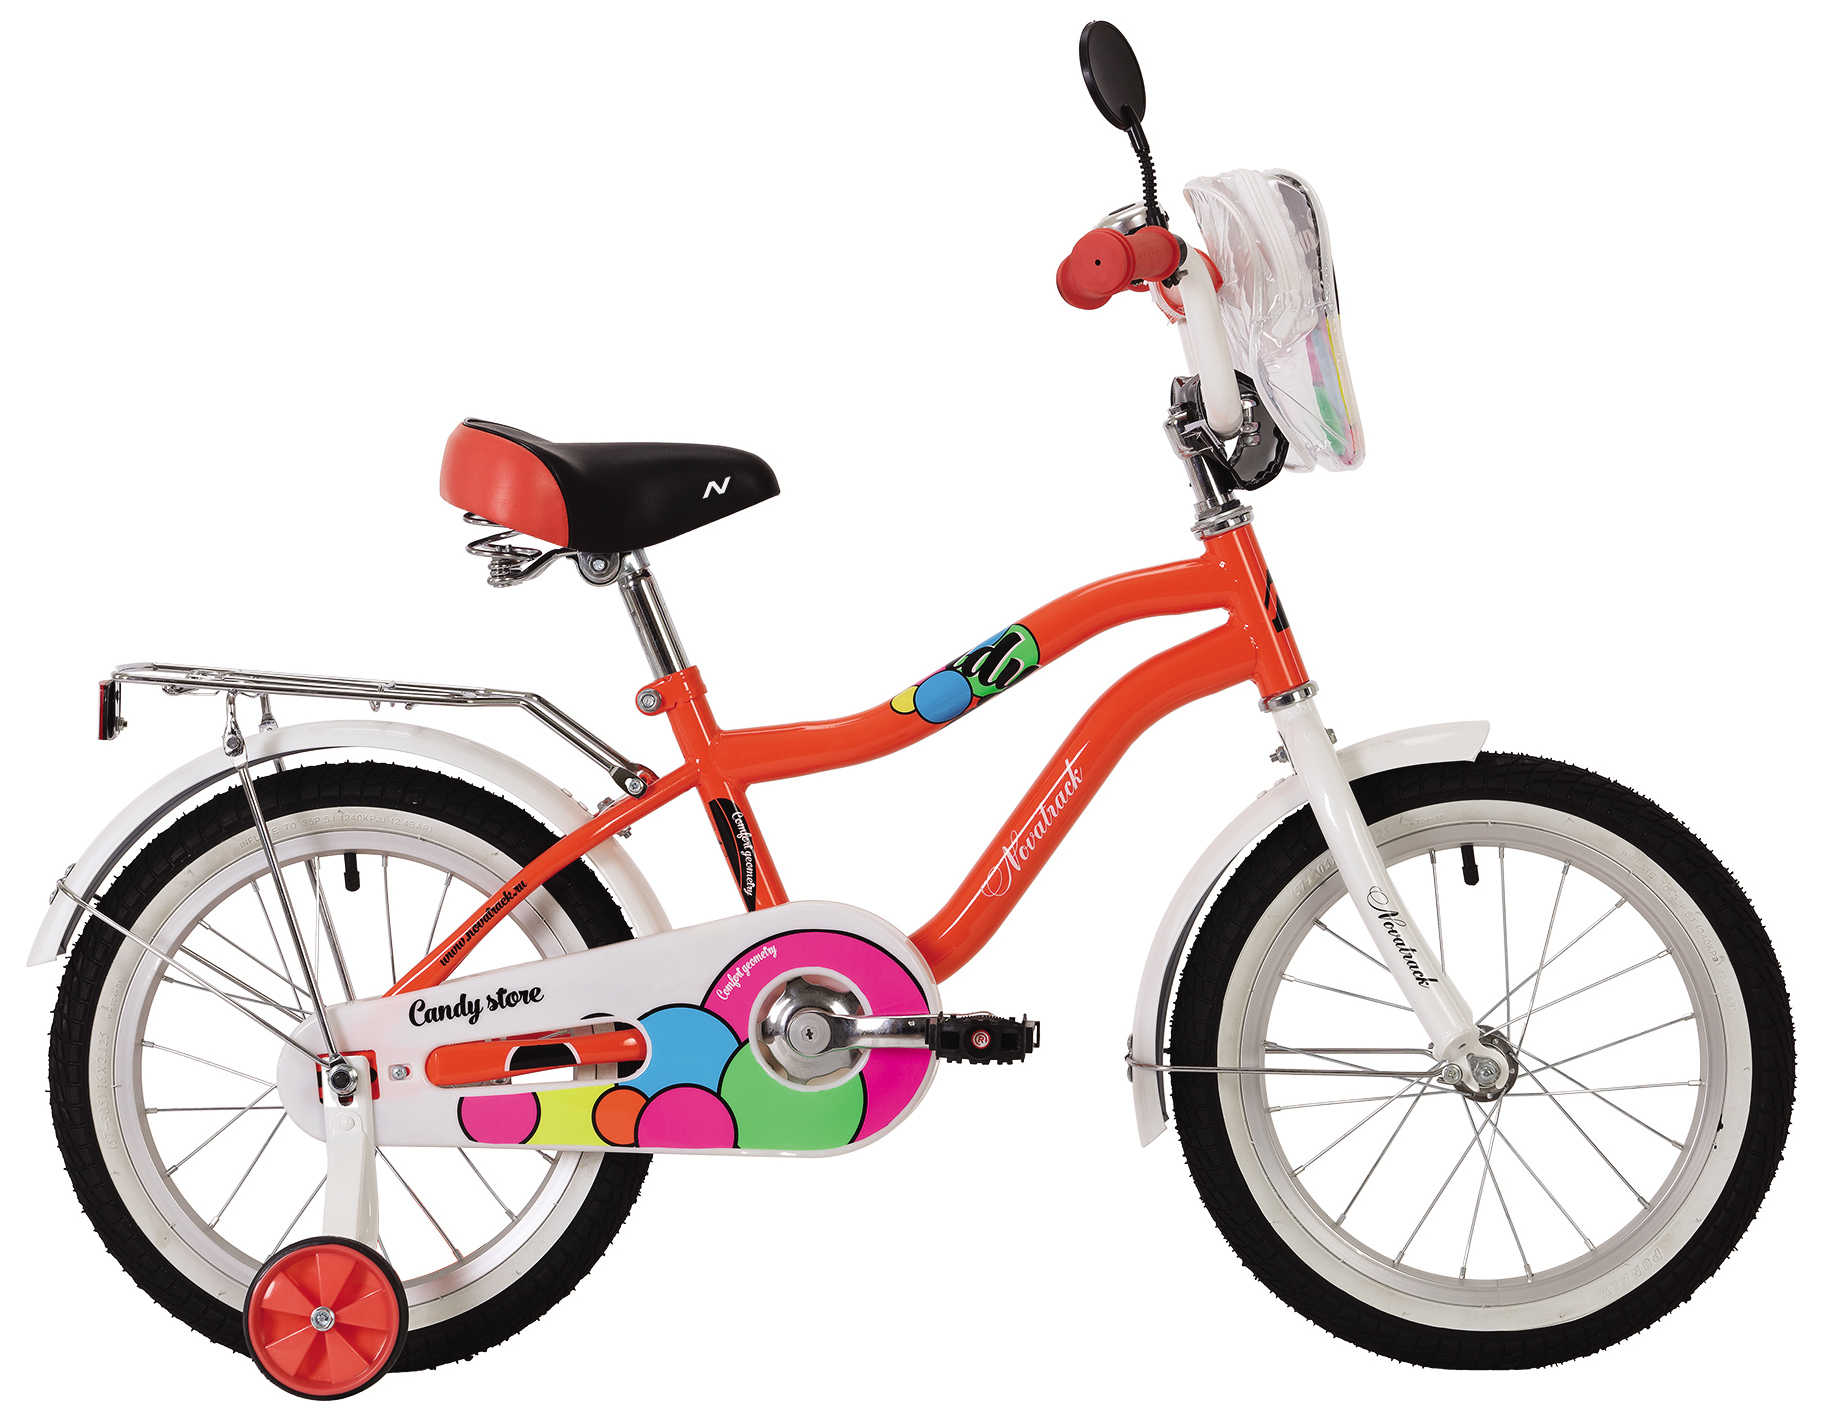  Отзывы о Детском велосипеде Pifagor Candy 16 2019